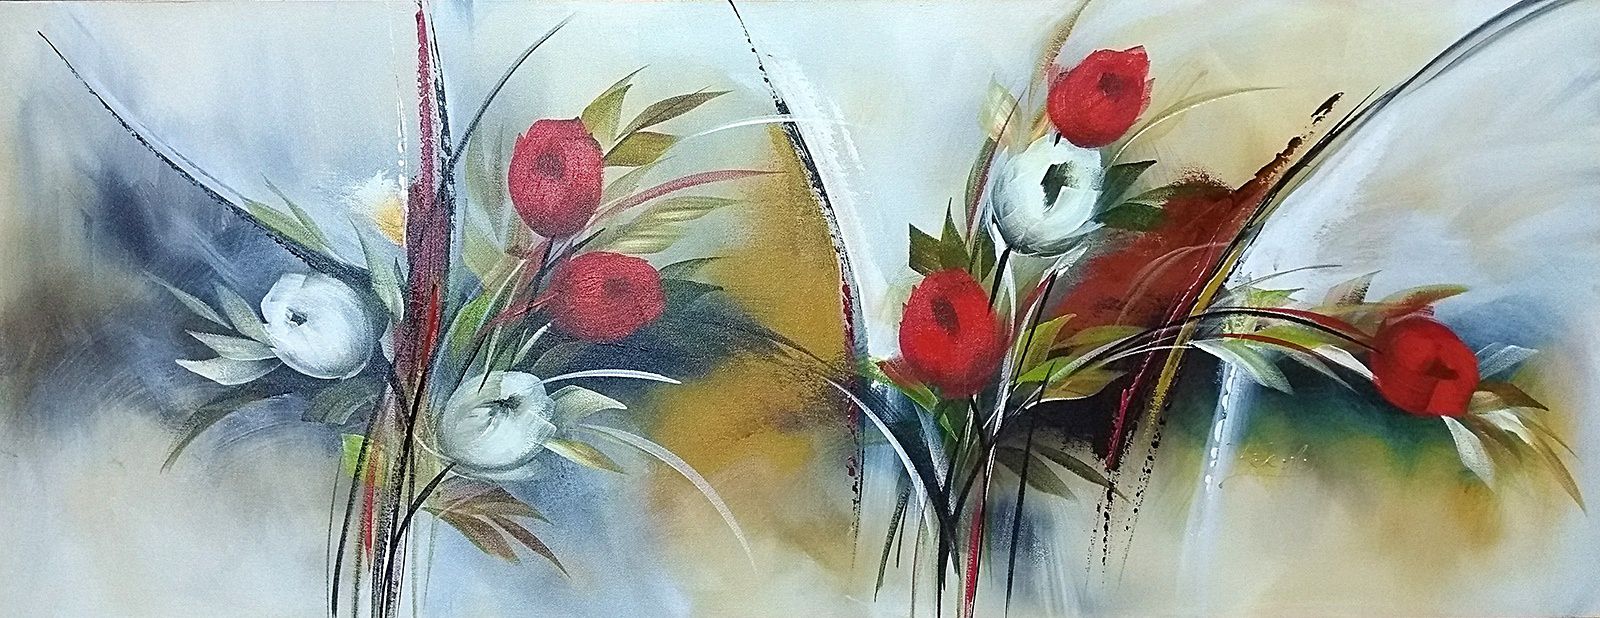 Pintura\Quadro\Tela Floral e Abstrato com tulipas vermelhas e brancas. -  Fer Amantéa Galeria de Artes